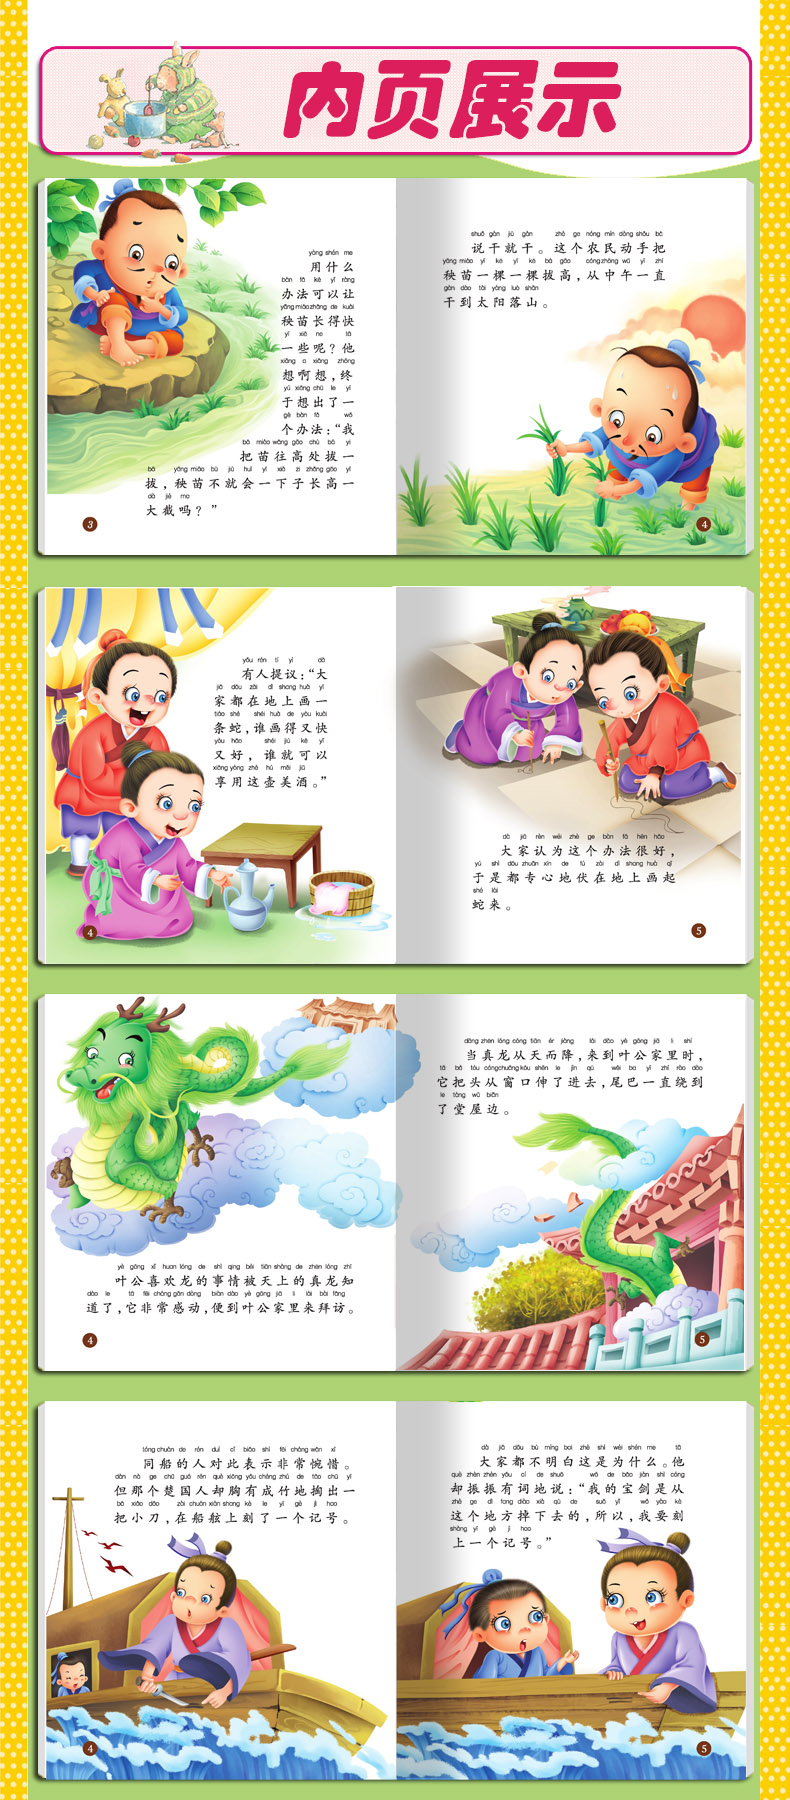 彩图注音中华成语故事小画书 儿童绘本图书3-6岁宝